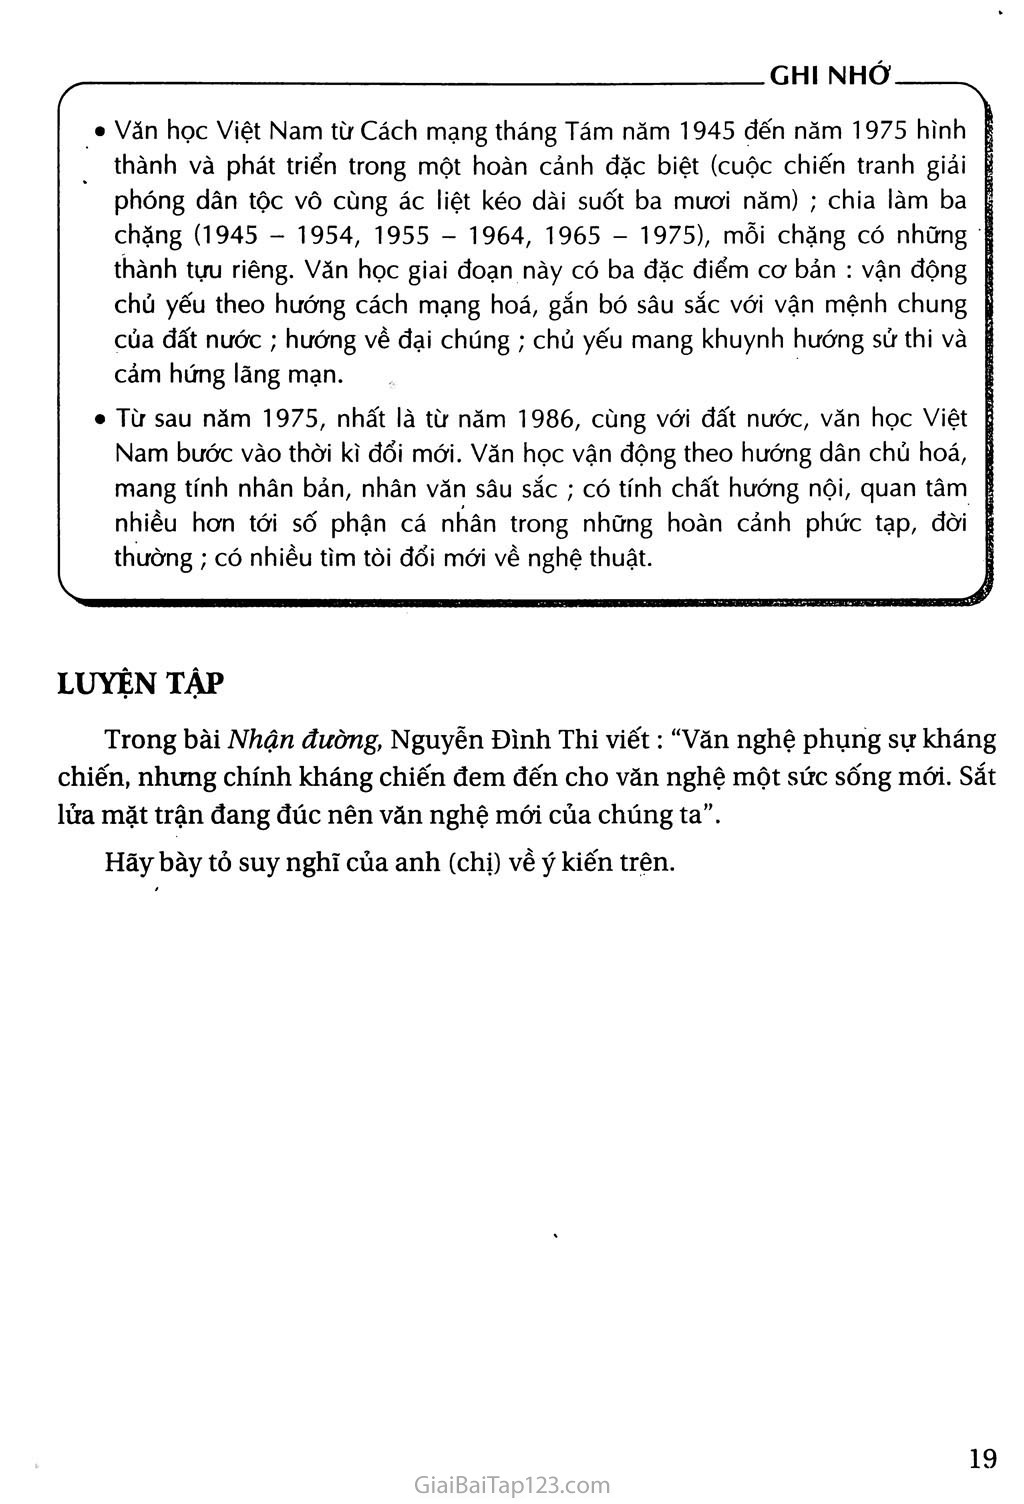 Khái quát văn học Việt Nam từ cách mạng tháng tám năm 1945 đến hết thế kỉ XX trang 17